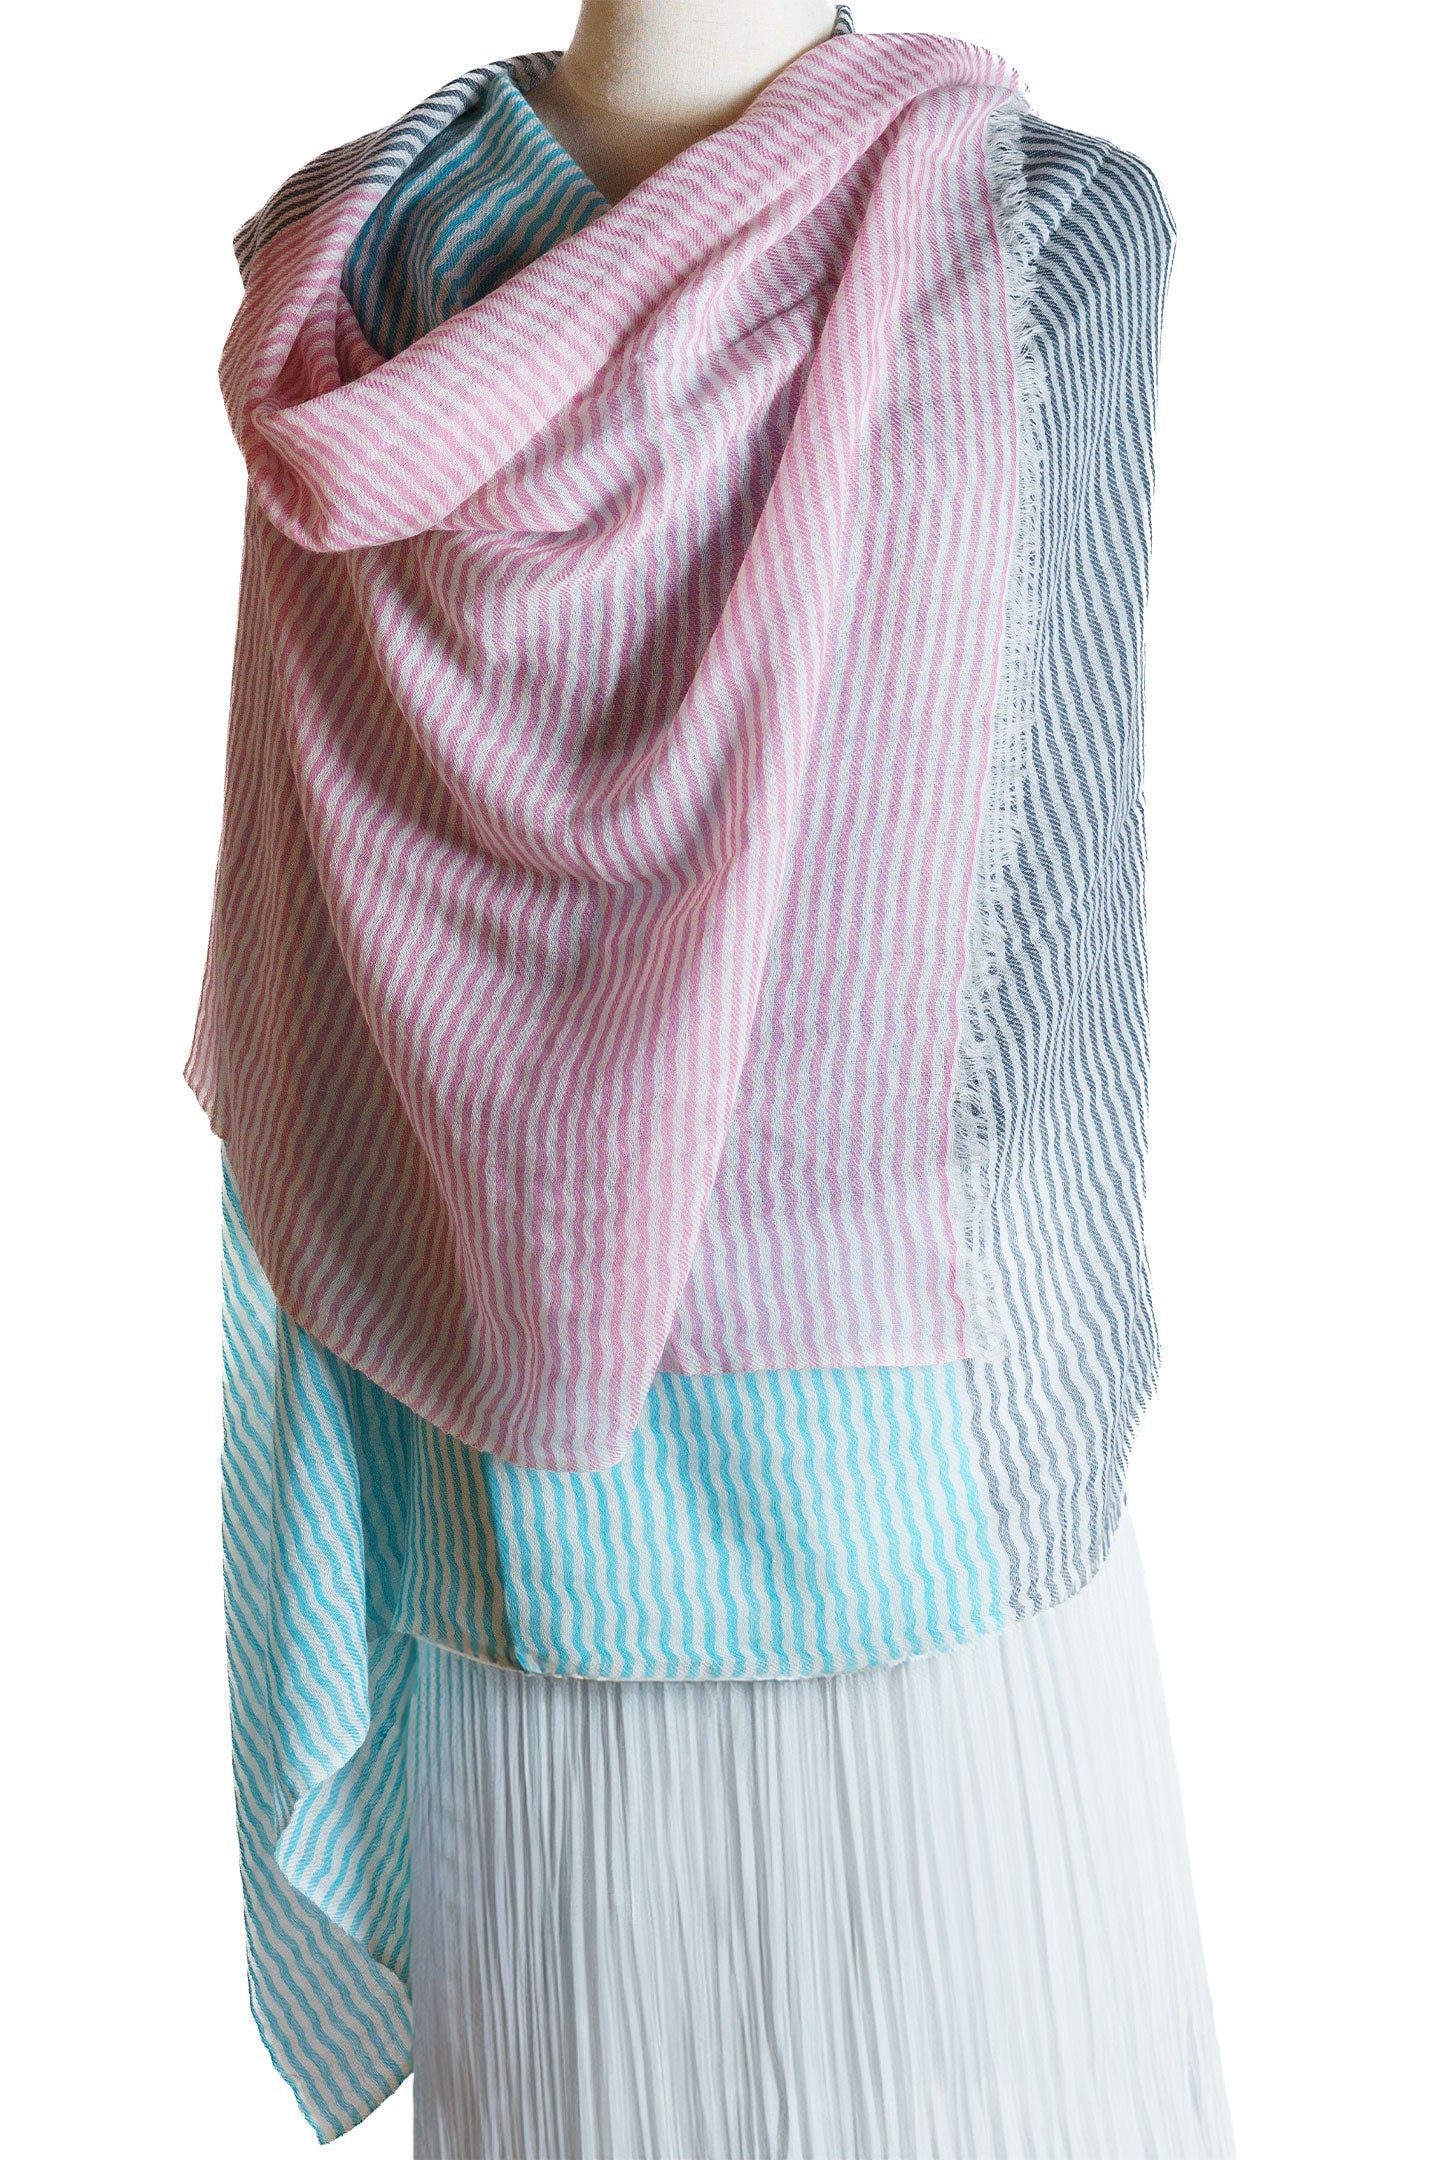 Multi Colored Stripe Cashmere Wrap Shawl